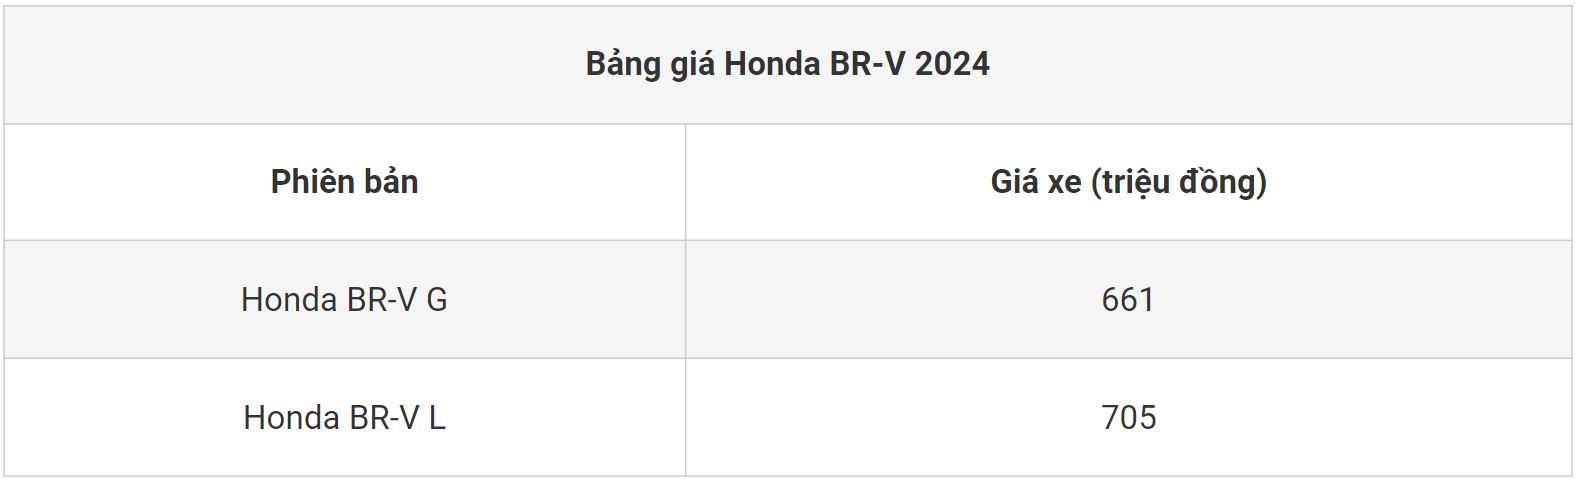 Honda BR-V 2024 bứt phá với thiết kế mới